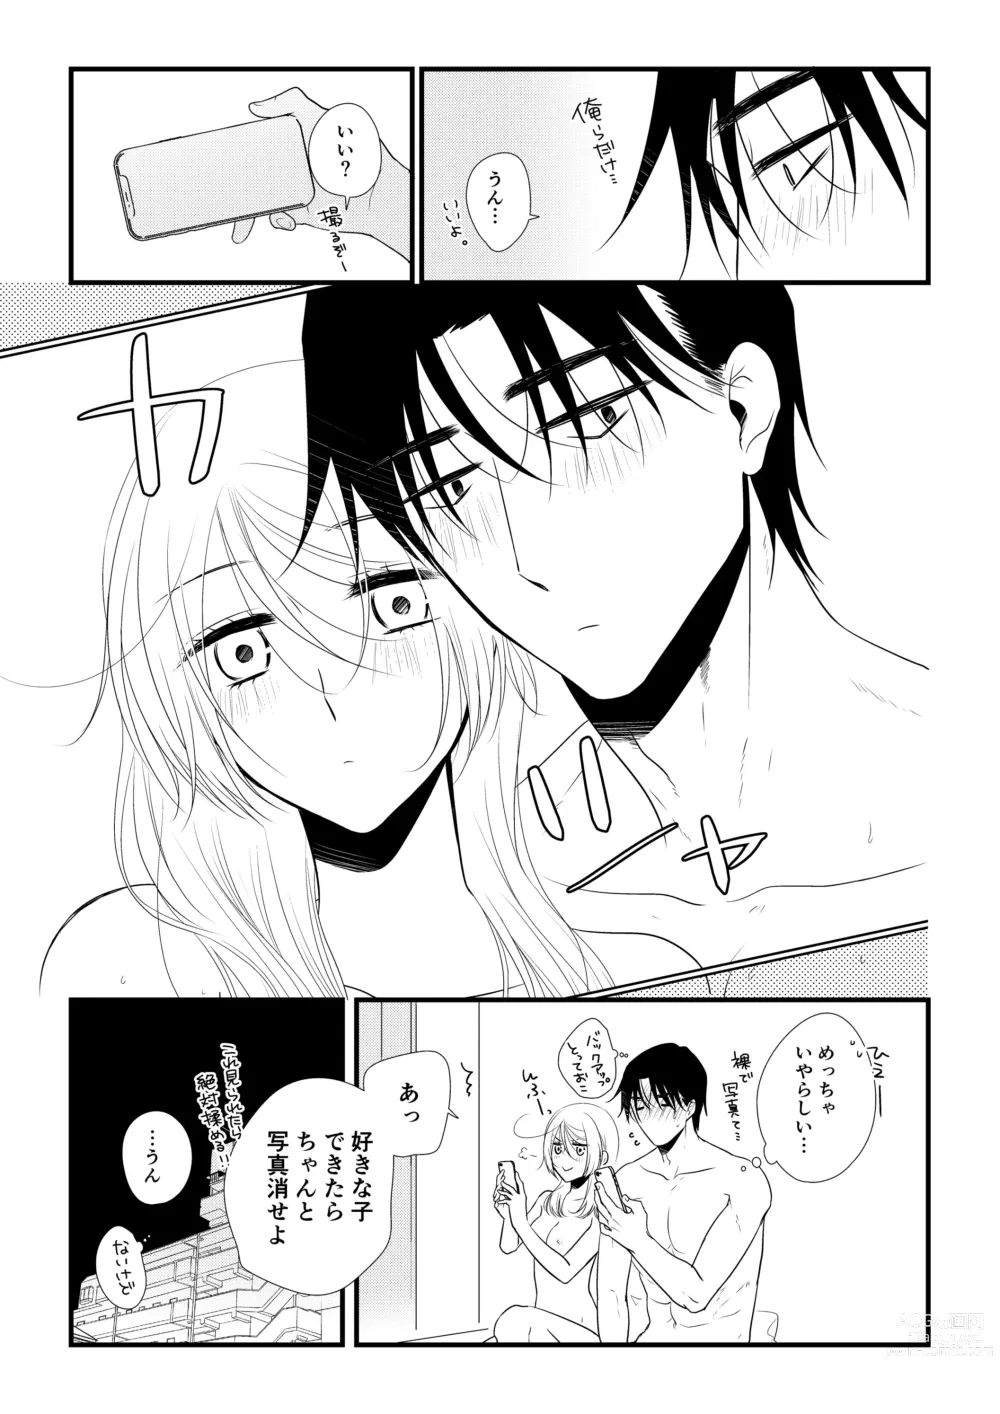 Page 108 of doujinshi Itsuki to Yuusei 2